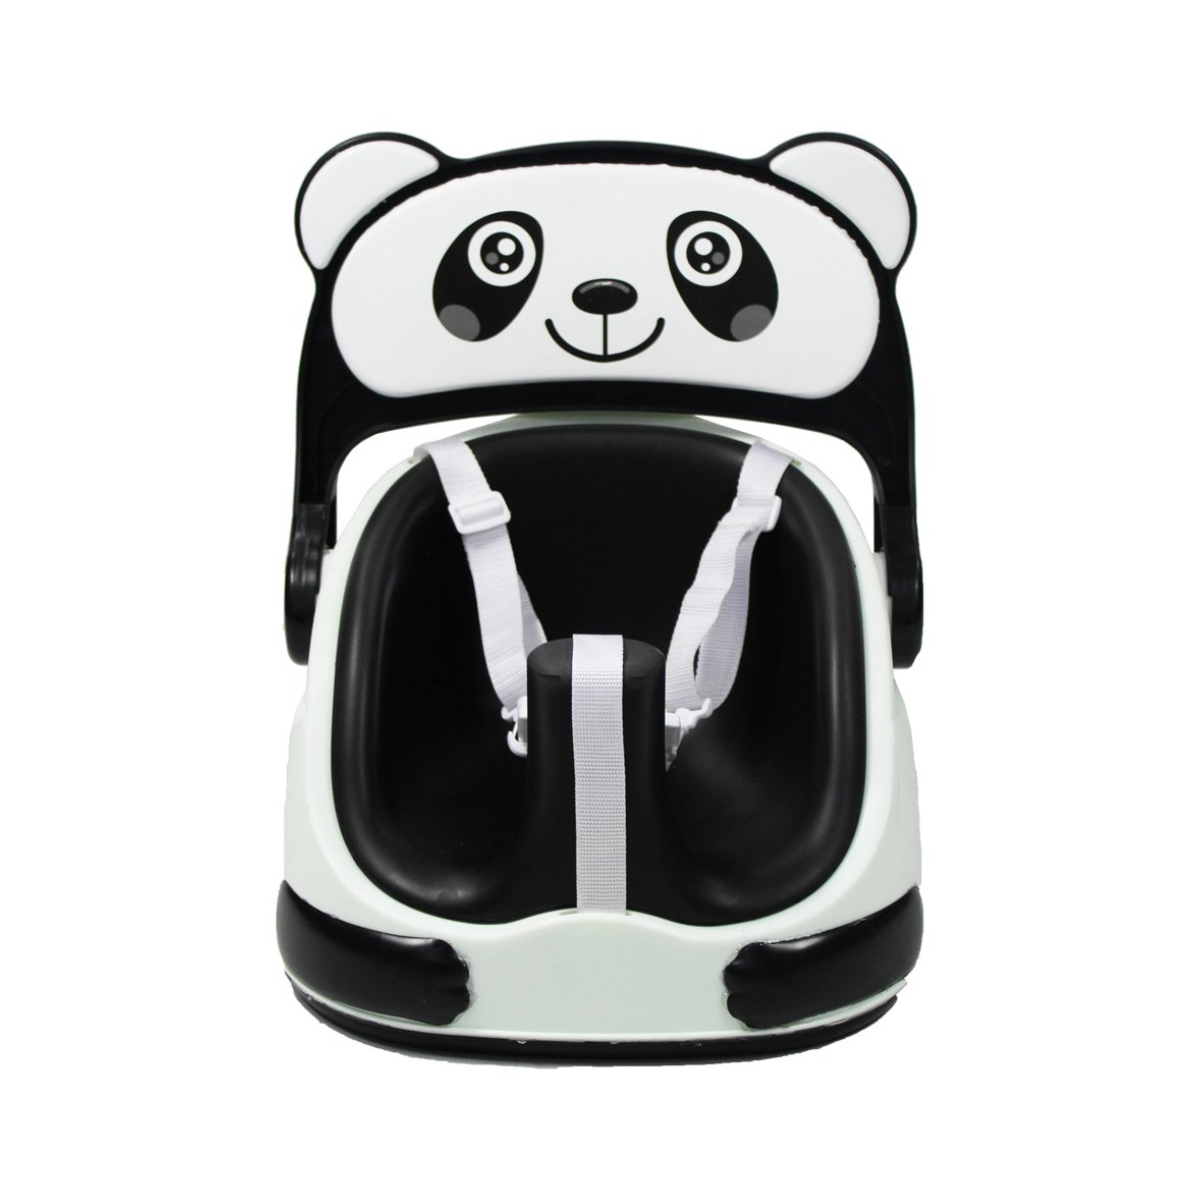 Red Kite Panda Feeding Booster Seat (CL)